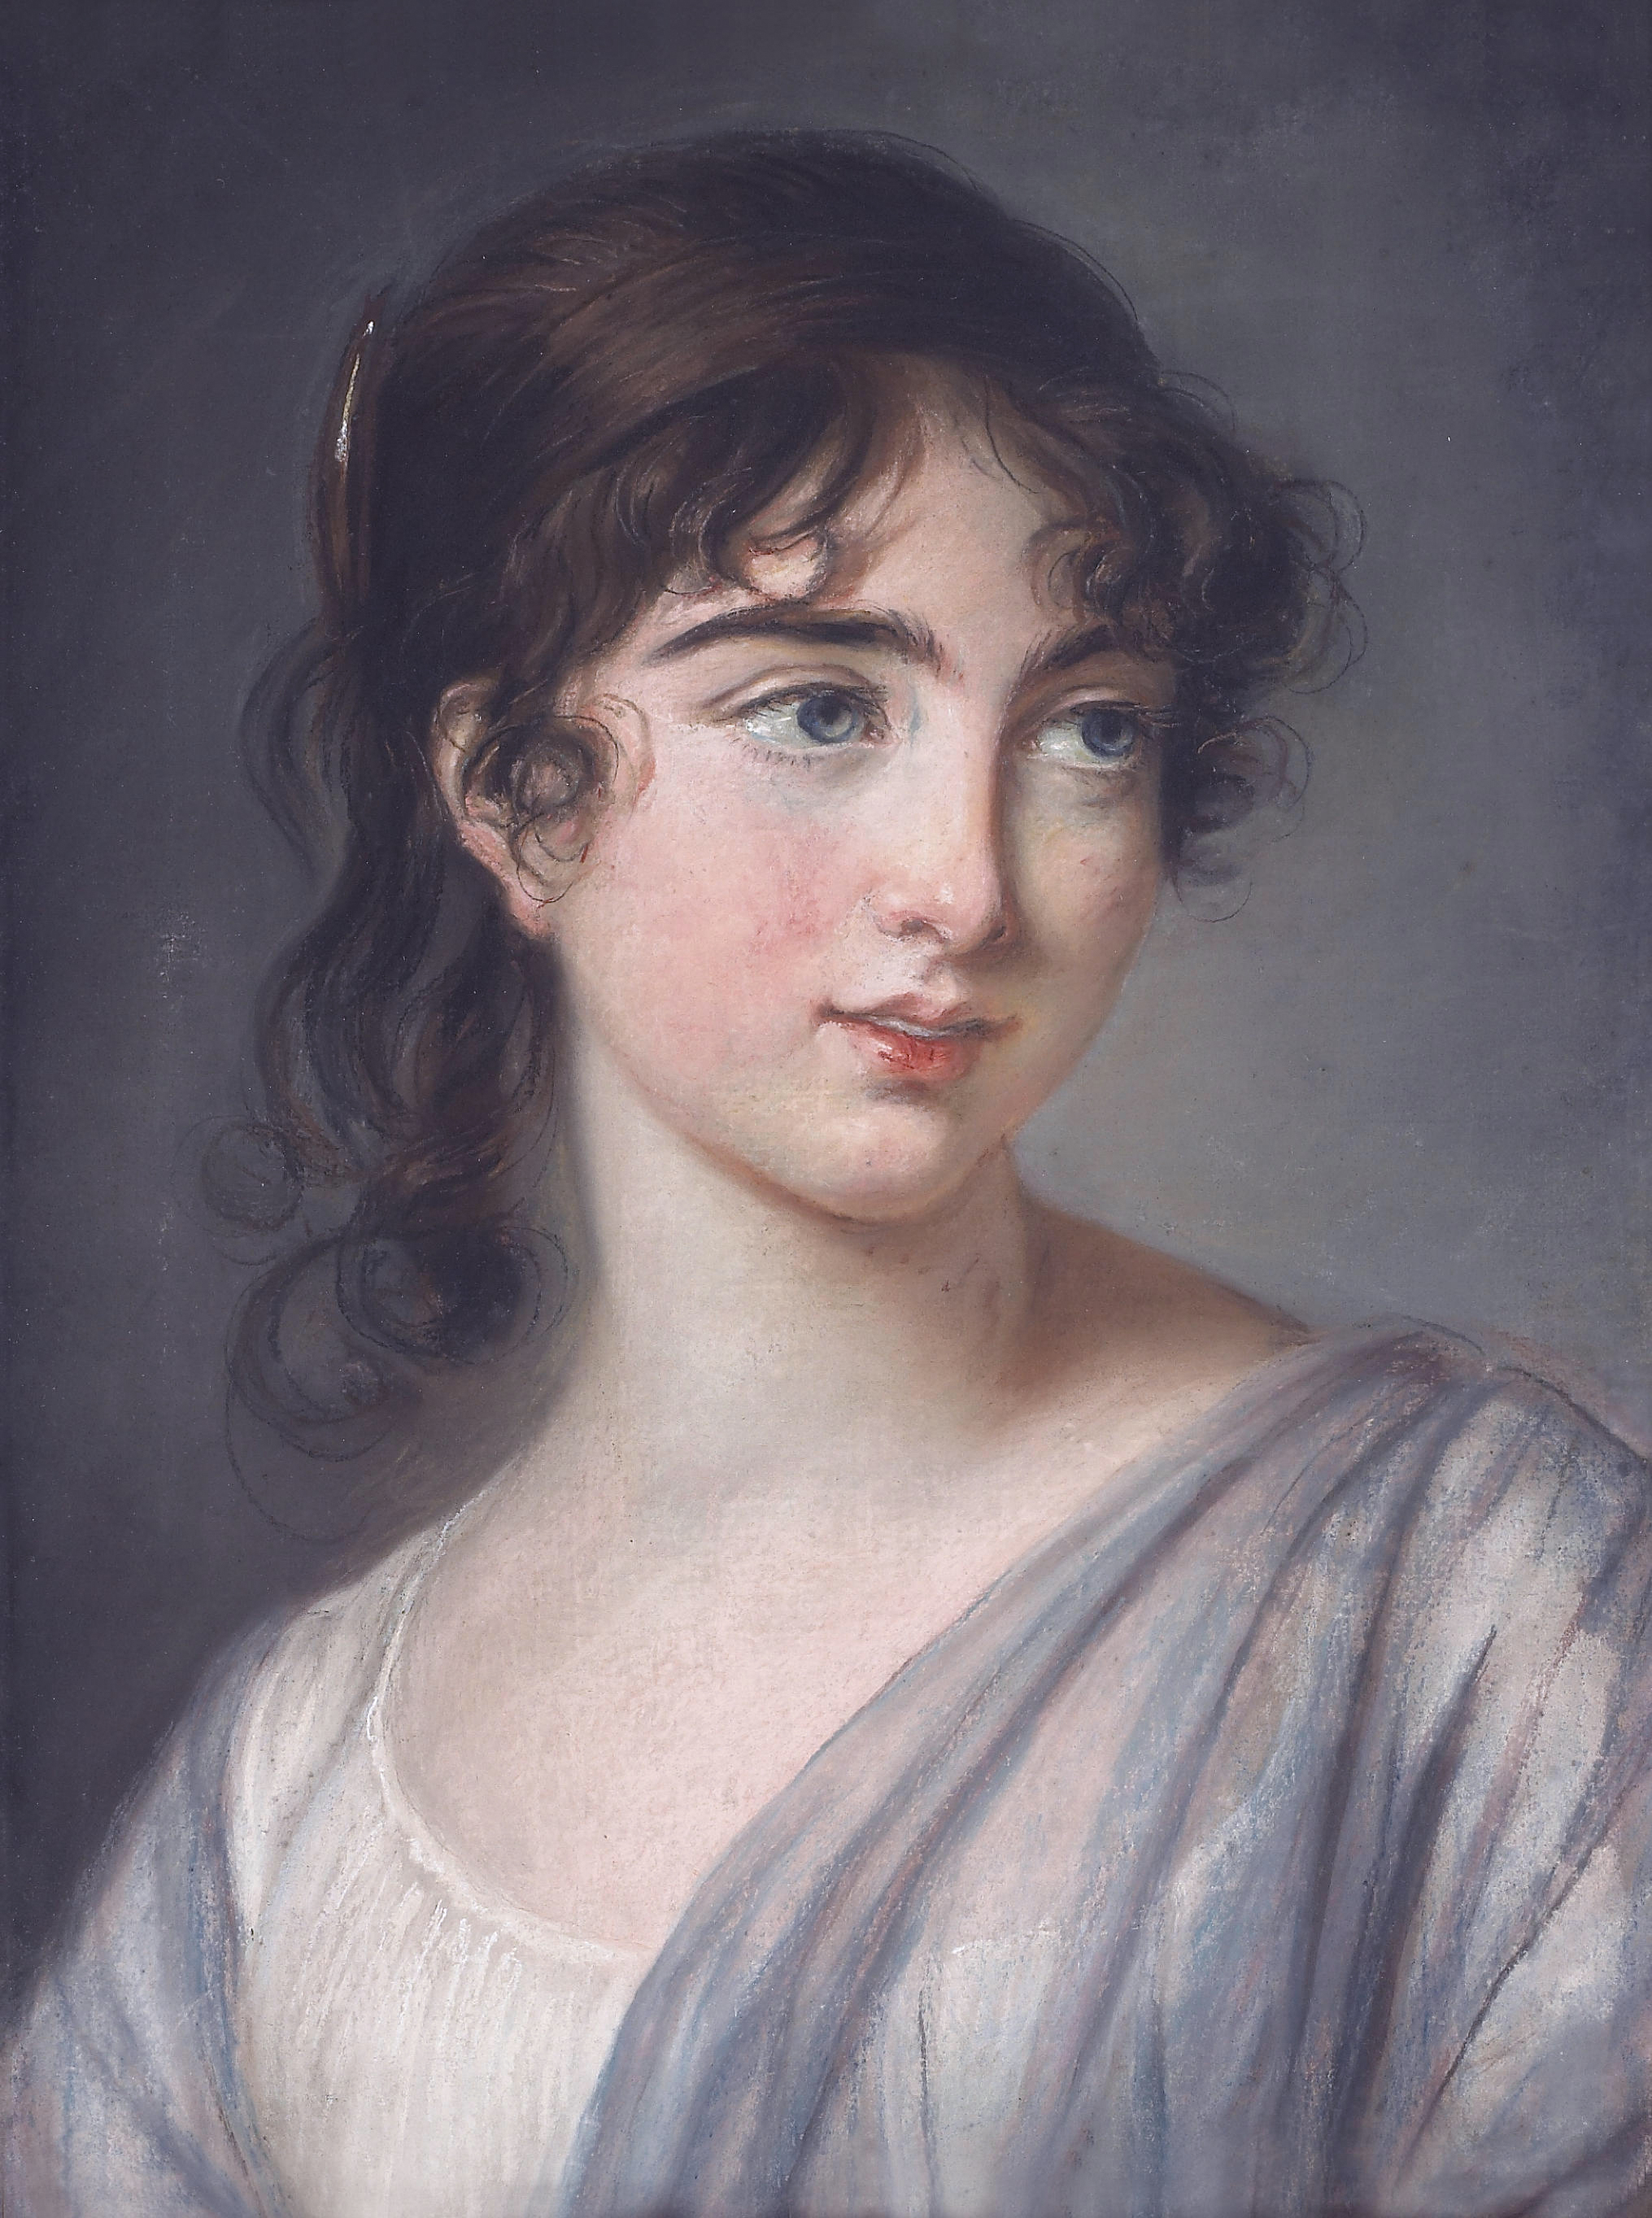 Corisande de Gramont, Countess of Tankerville, by Elisabeth Louise Vigée Le Brun (1755-1842)